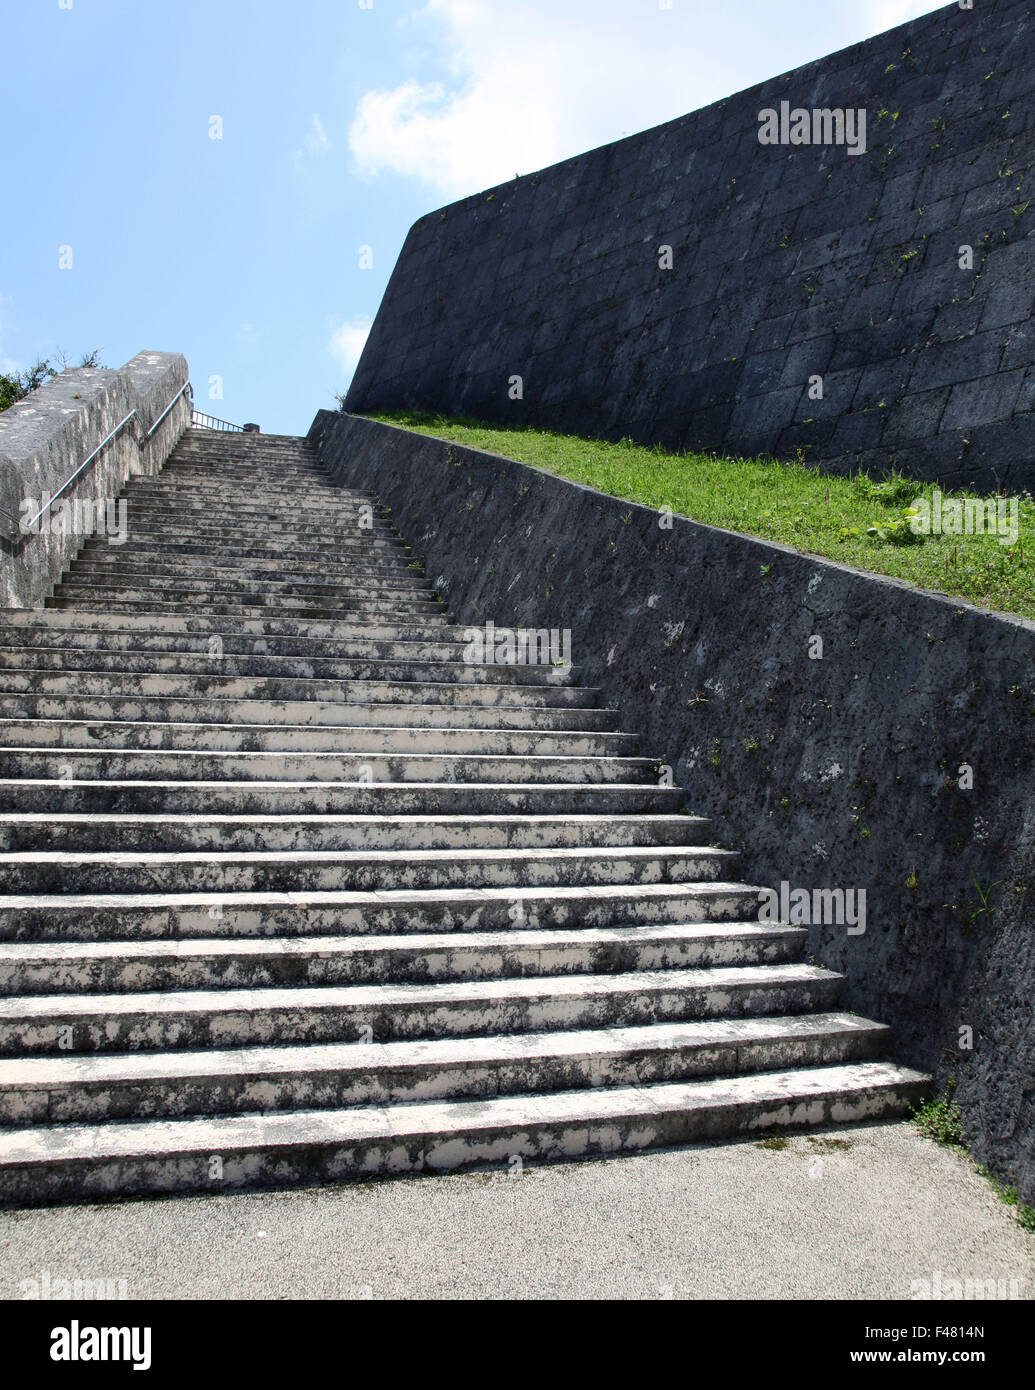 Es una foto de escalones de piedra que ir hasta un parque en Japón. Está cerca de una pared de una fortaleza Foto de stock